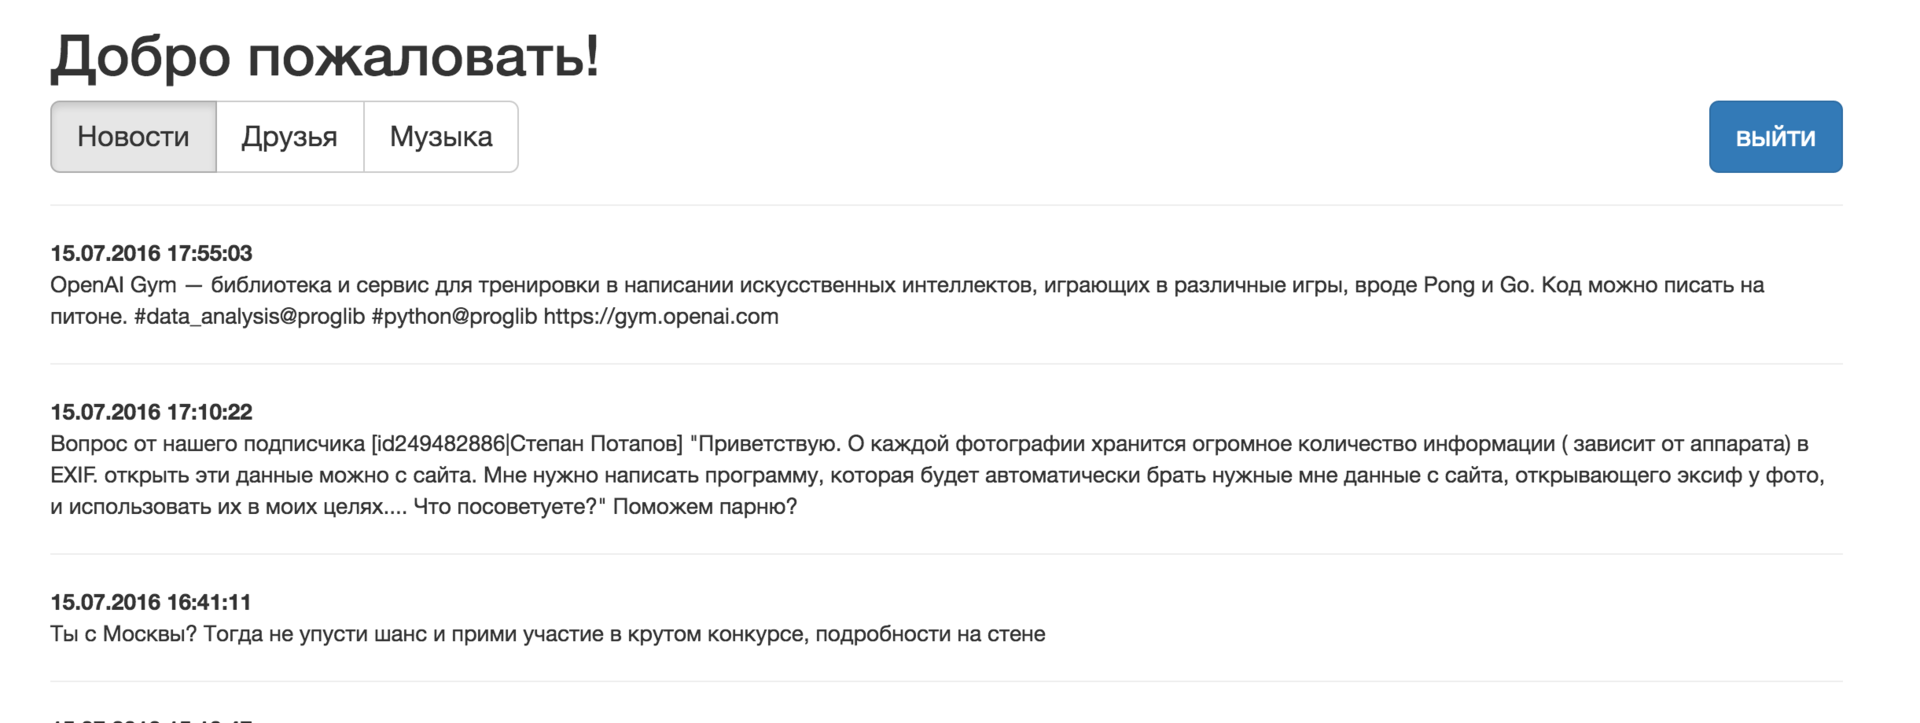 Делаем крутые Single Page Application на basis.js — часть 3. Клиент для «ВКонтакте» - 5